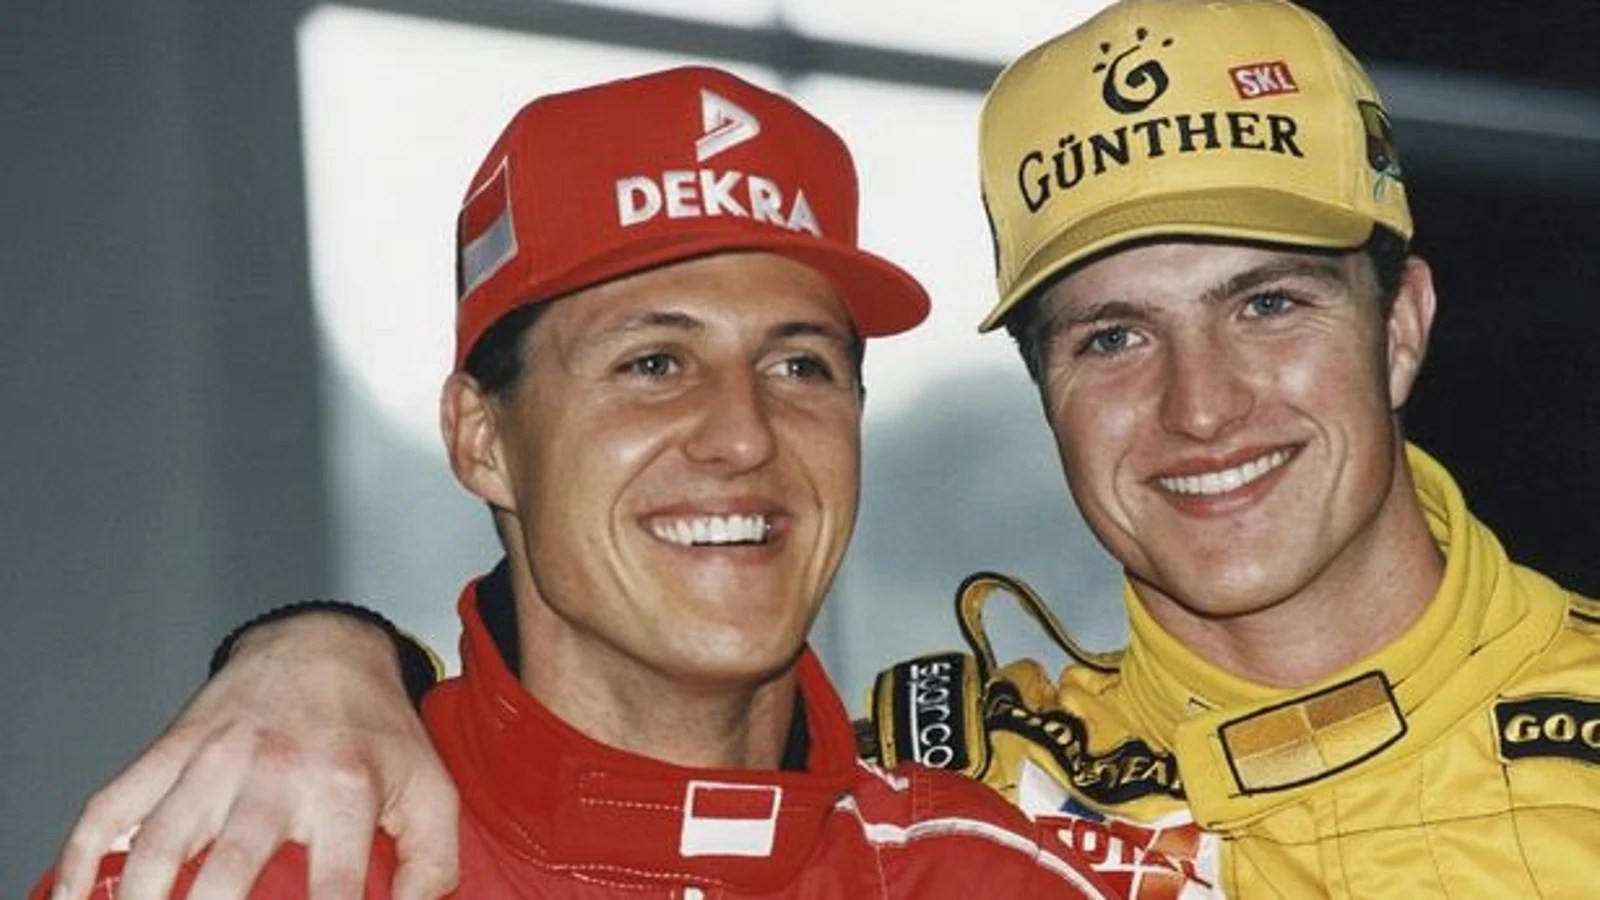 “Aquel hecho cambió a nuestra familia”: Así está Michael Schumacher según su hermano